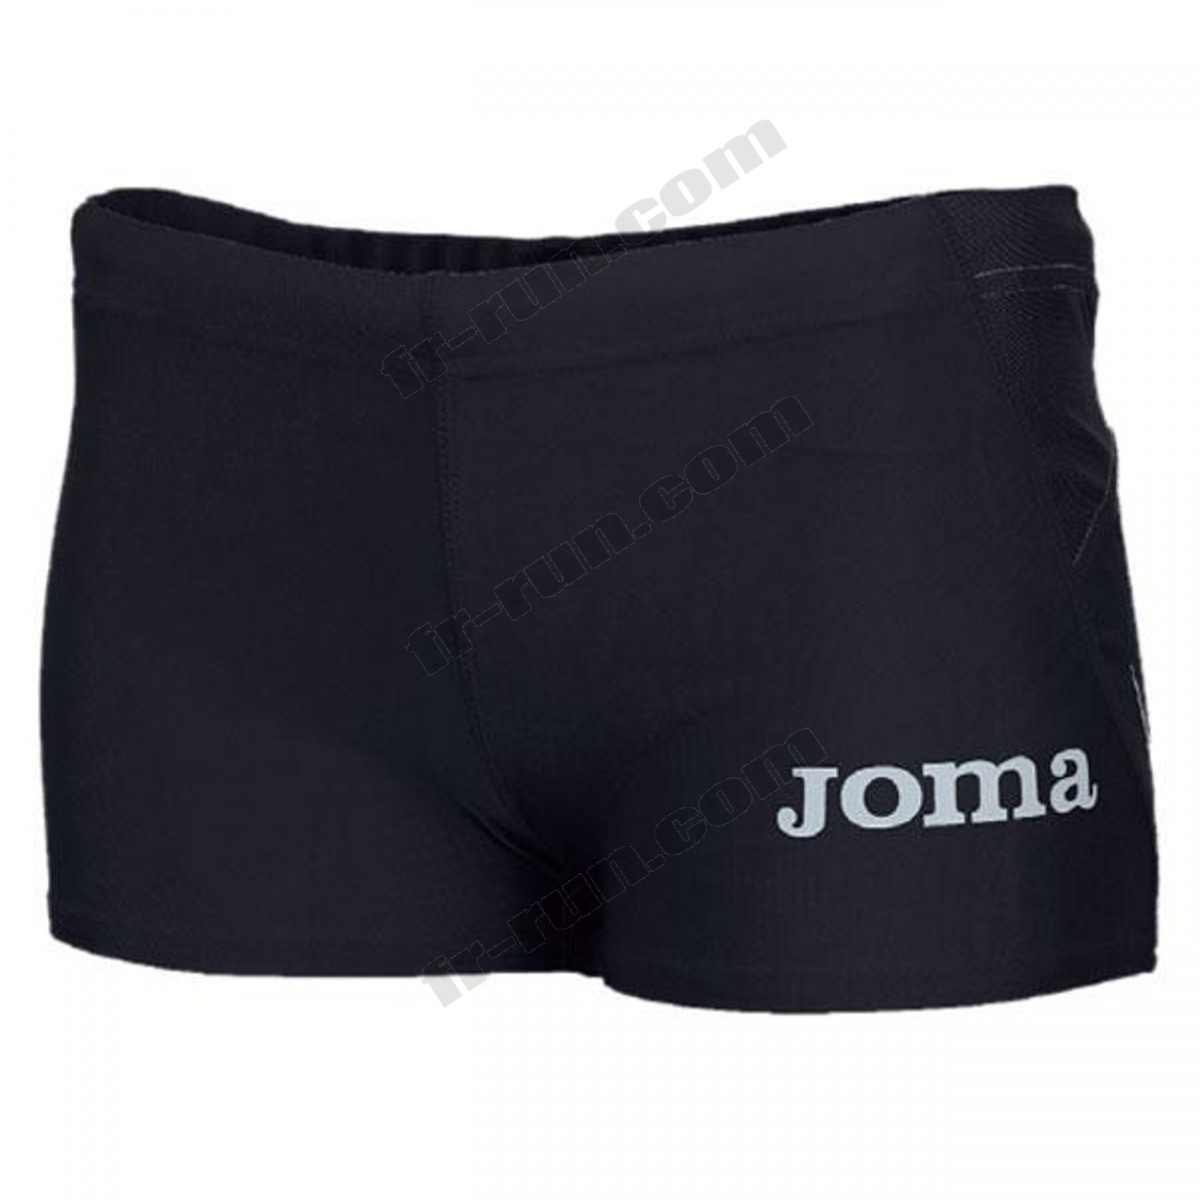 Joma/running femme JOMA Joma Elite Ii Shorts ◇◇◇ Pas Cher Du Tout - -1